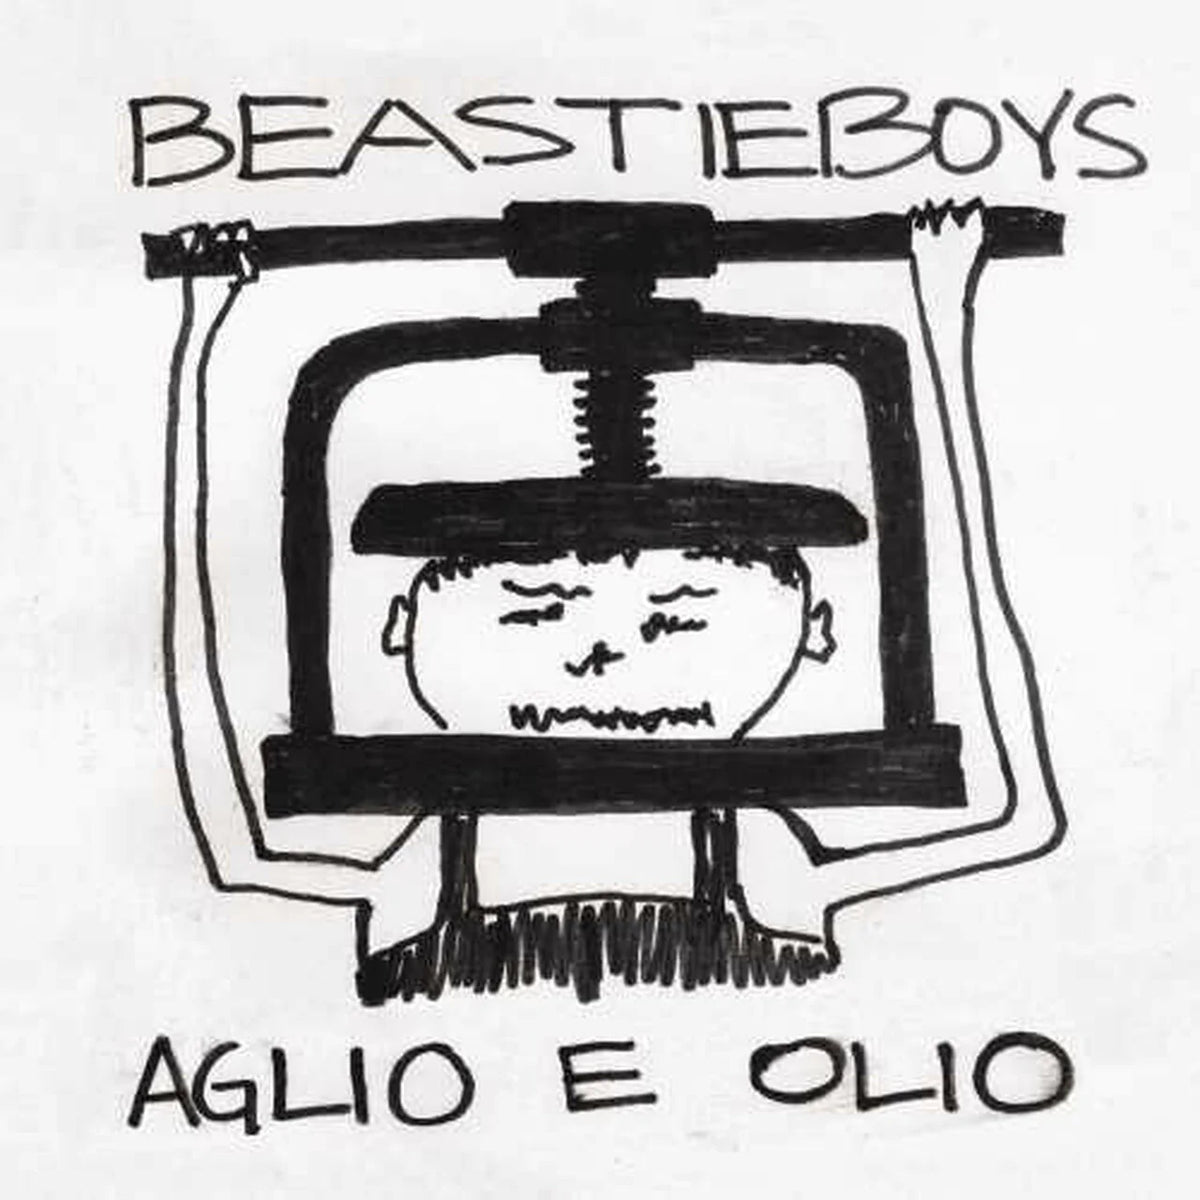 Beastie Boys - Aglio E Olio LP (RSD Exclusive, 180g, Clear Vinyl)